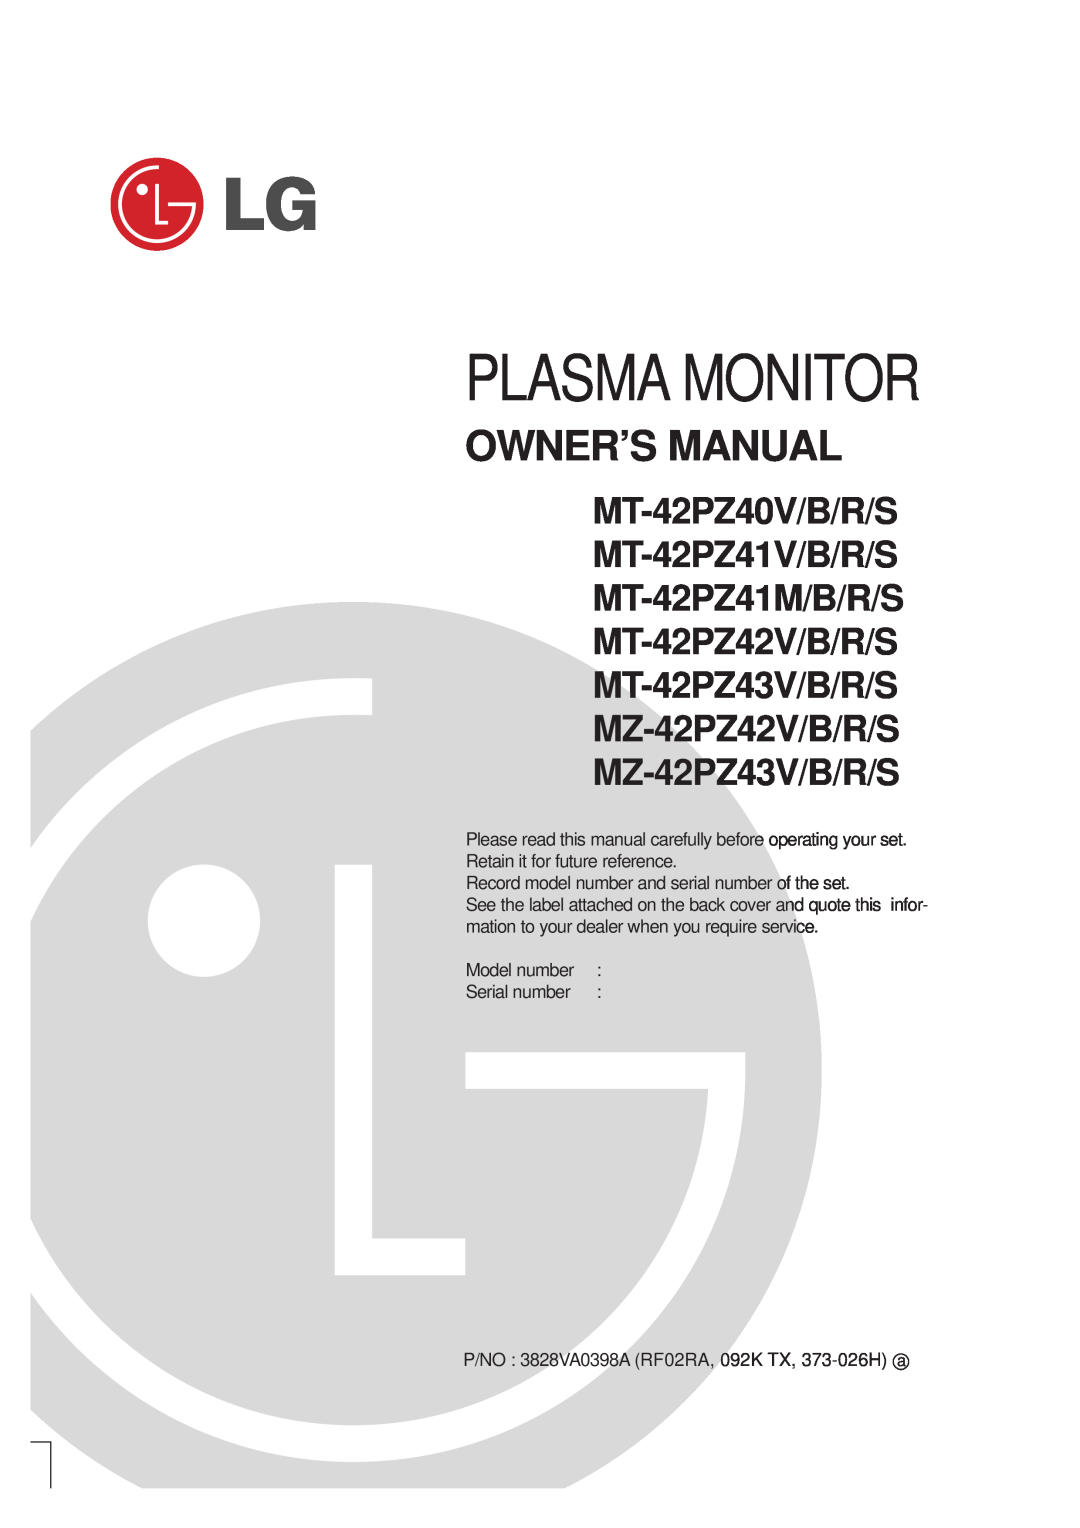 LG Electronics MZ owner manual MT-42PZ40V/B/R/S MT-42PZ41V/B/R/S MT-42PZ41M/B/R/S MT-42PZ42V/B/R/S, Plasma Monitor 